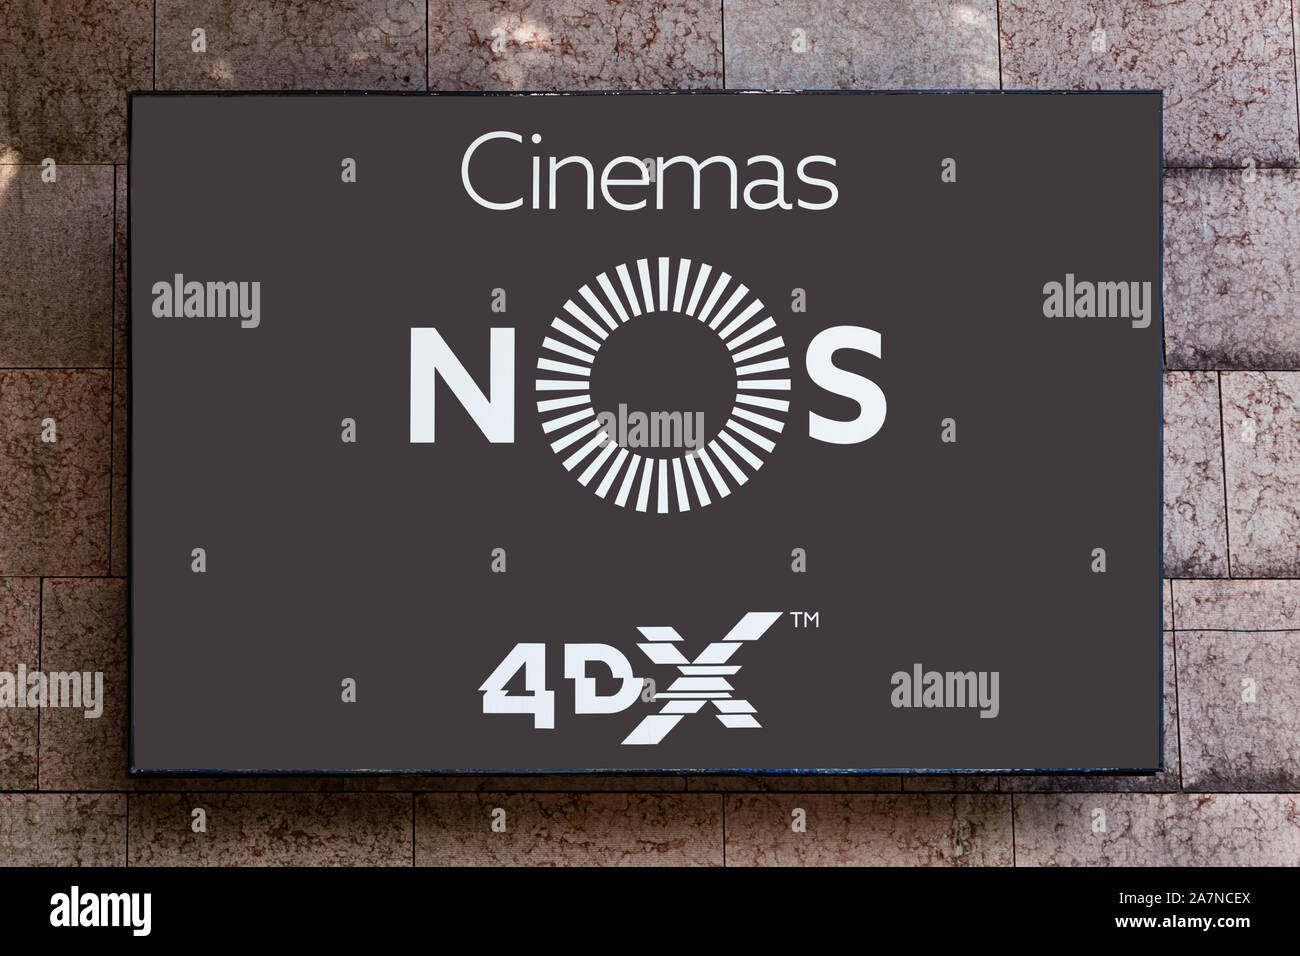 Almada, Portugal - 24 octobre 2019 : la publicité d'une pancarte portant amendements Cinema avec 4DX dans un centre commercial ou un centre commercial mur extérieur.NOS, cinema,film Banque D'Images